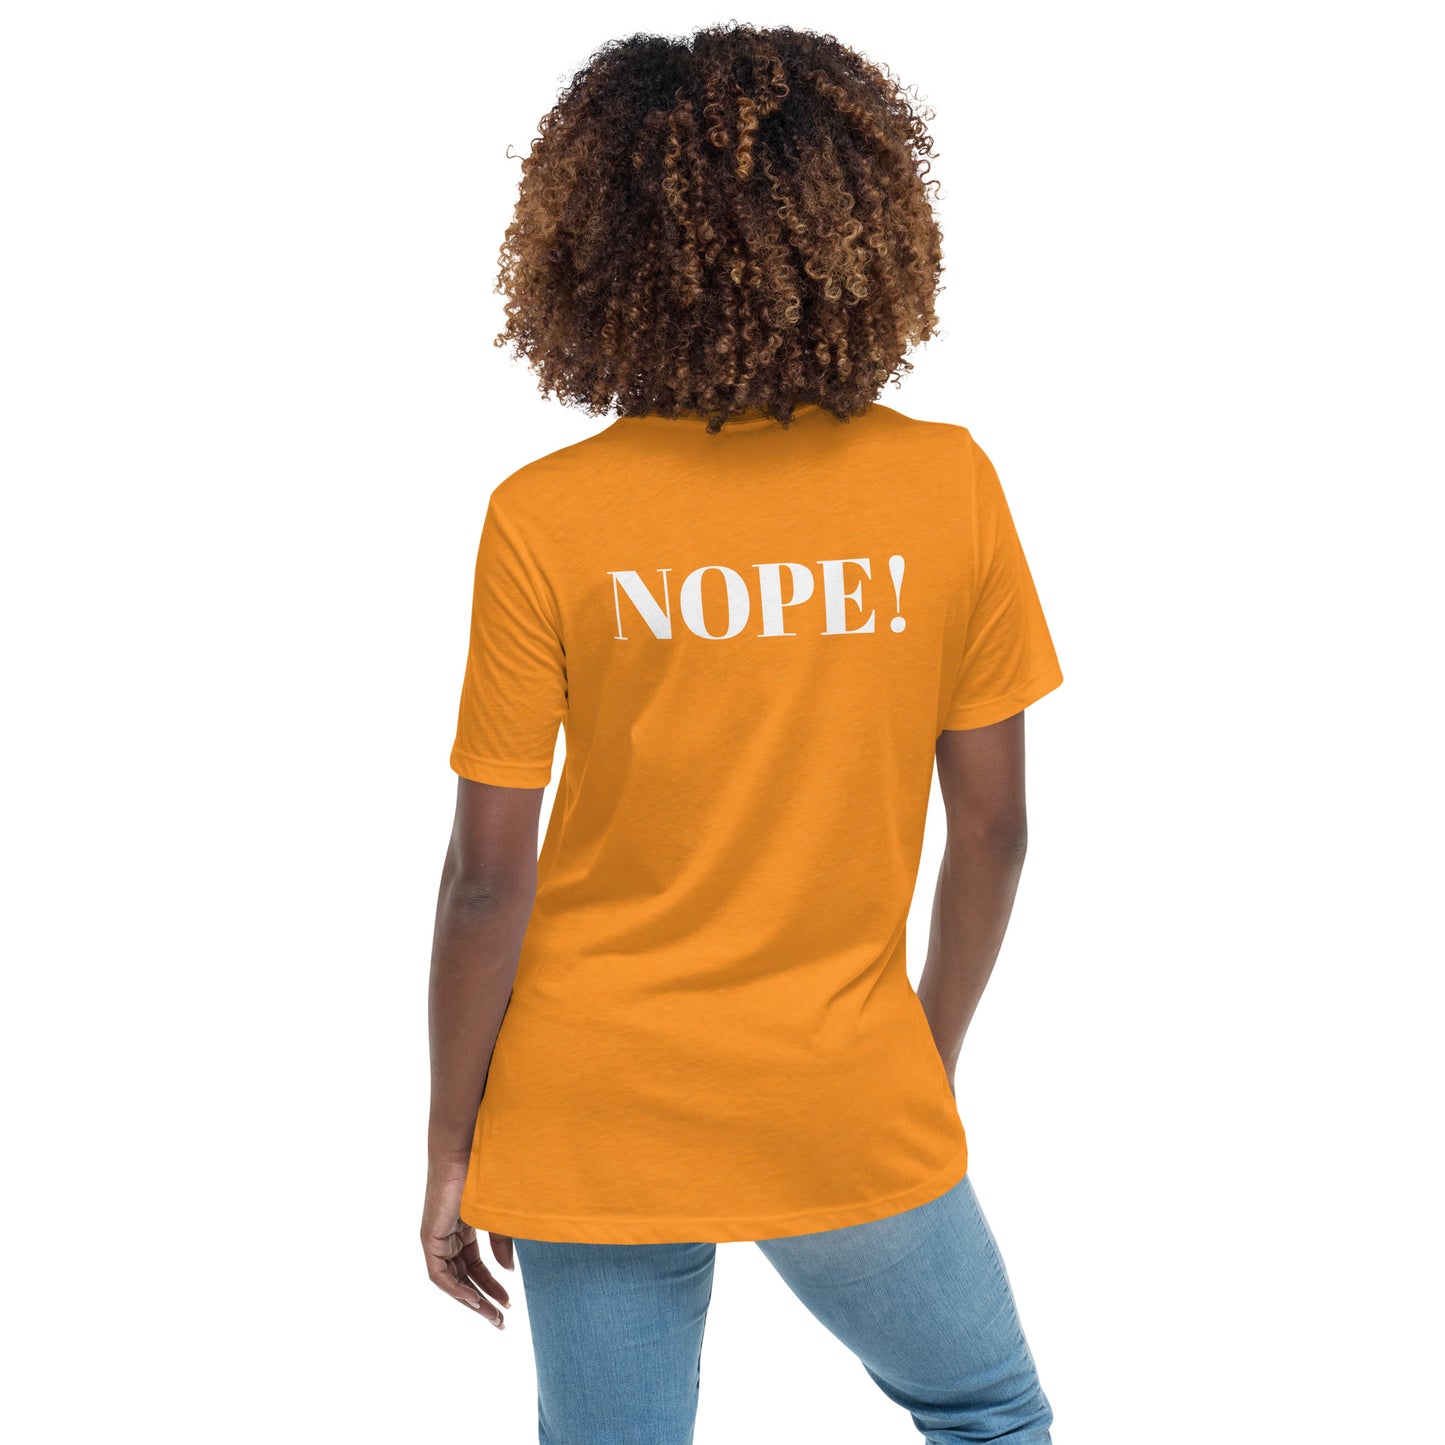 Nope! Women's Relaxed T-Shirt